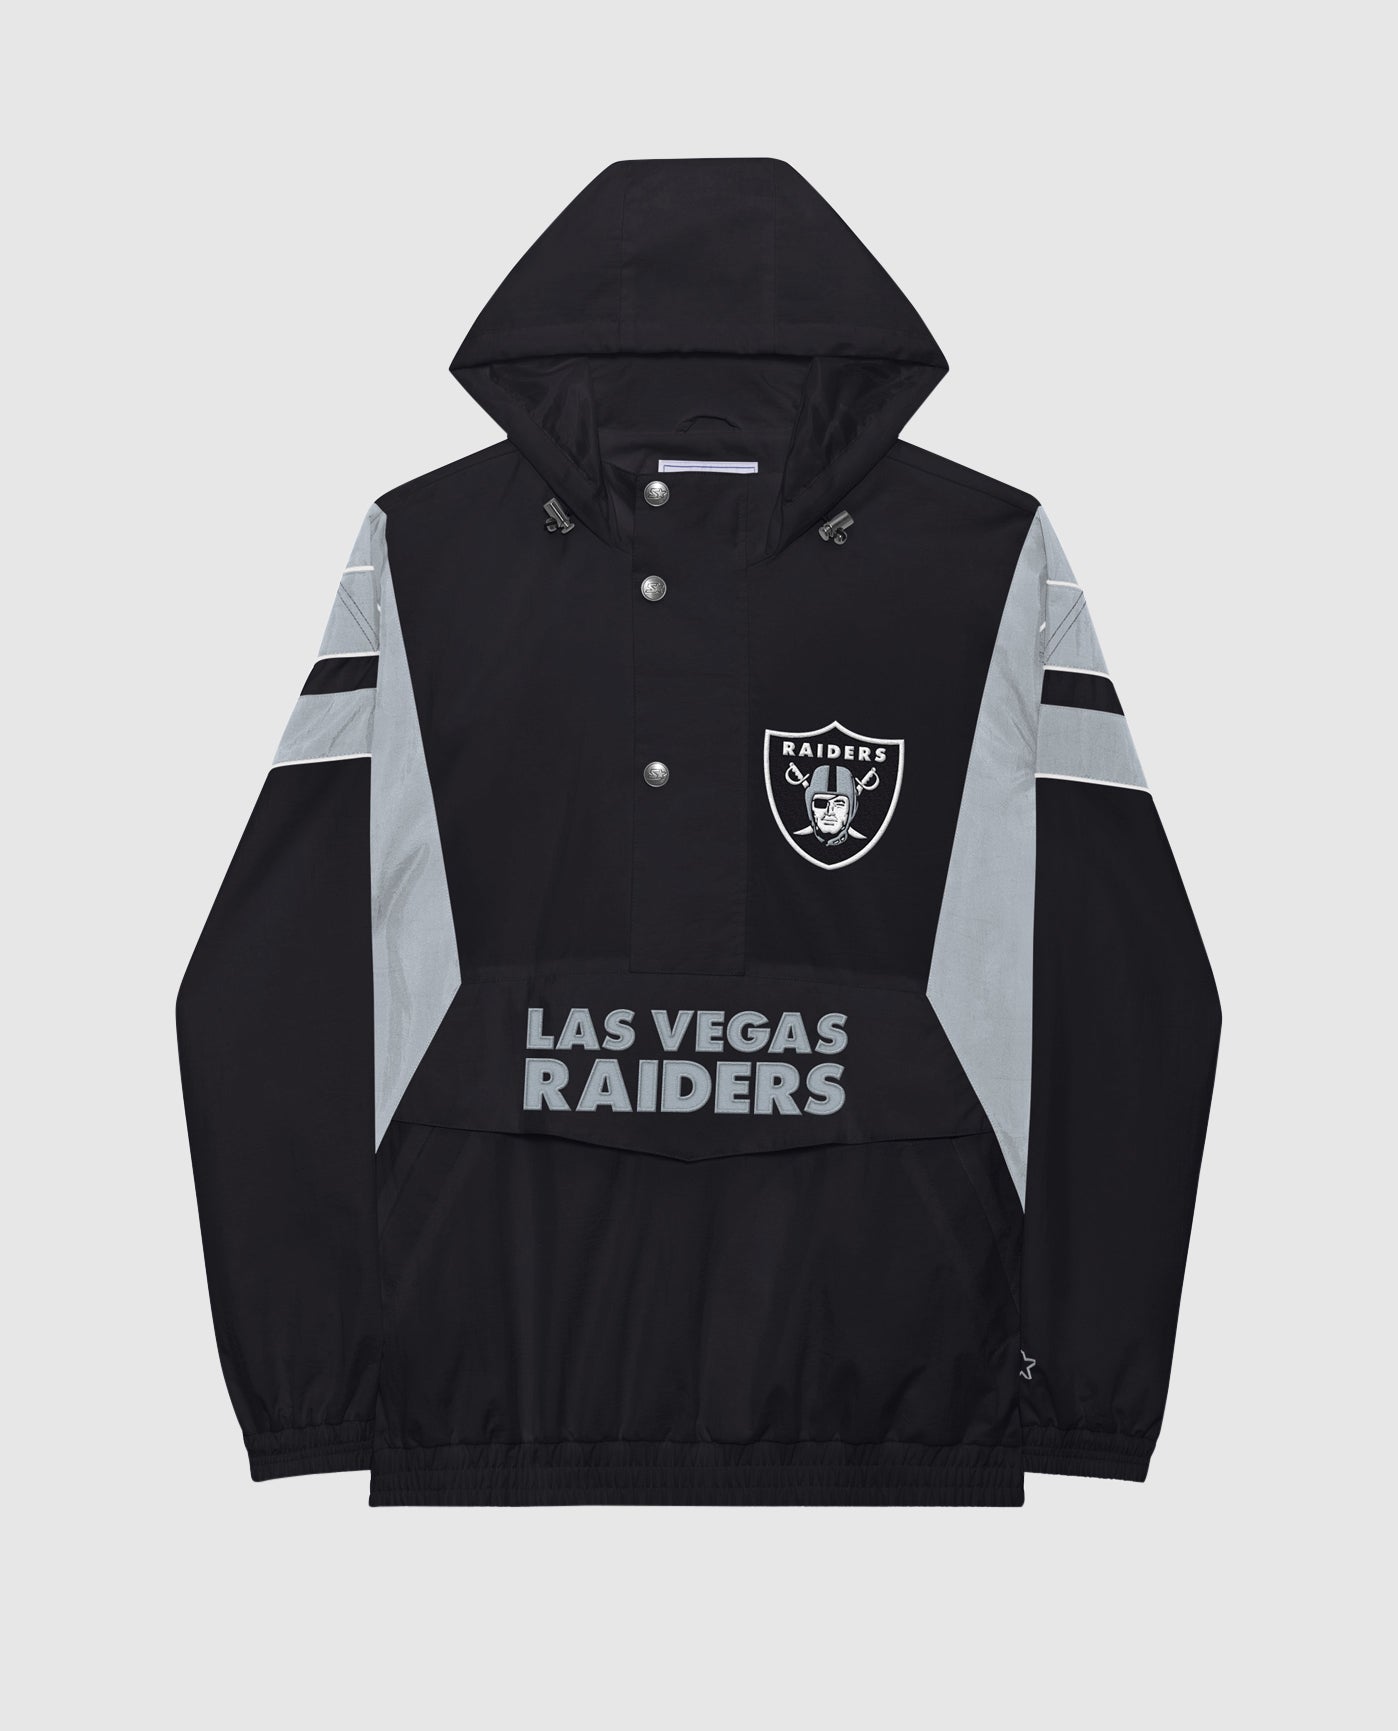 Las Vegas Raiders Zip Up Hoodie For Men and Women